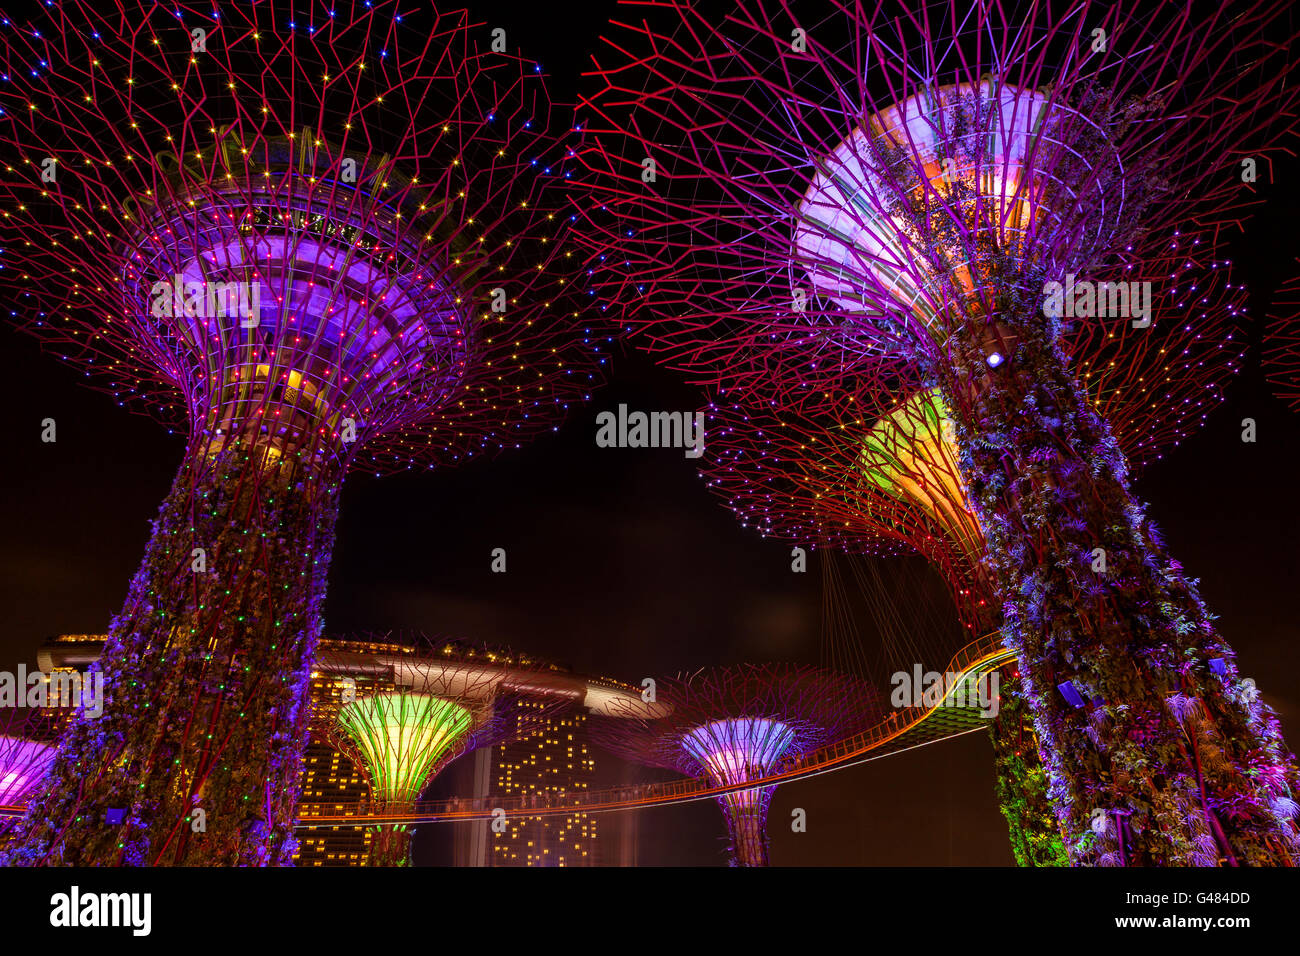 Singapur, Singapur - Diciembre 9, 2014: El Supertree Grove cobra vida en los jardines junto a la bahía de Singapur. El dazzlin nocturno Foto de stock